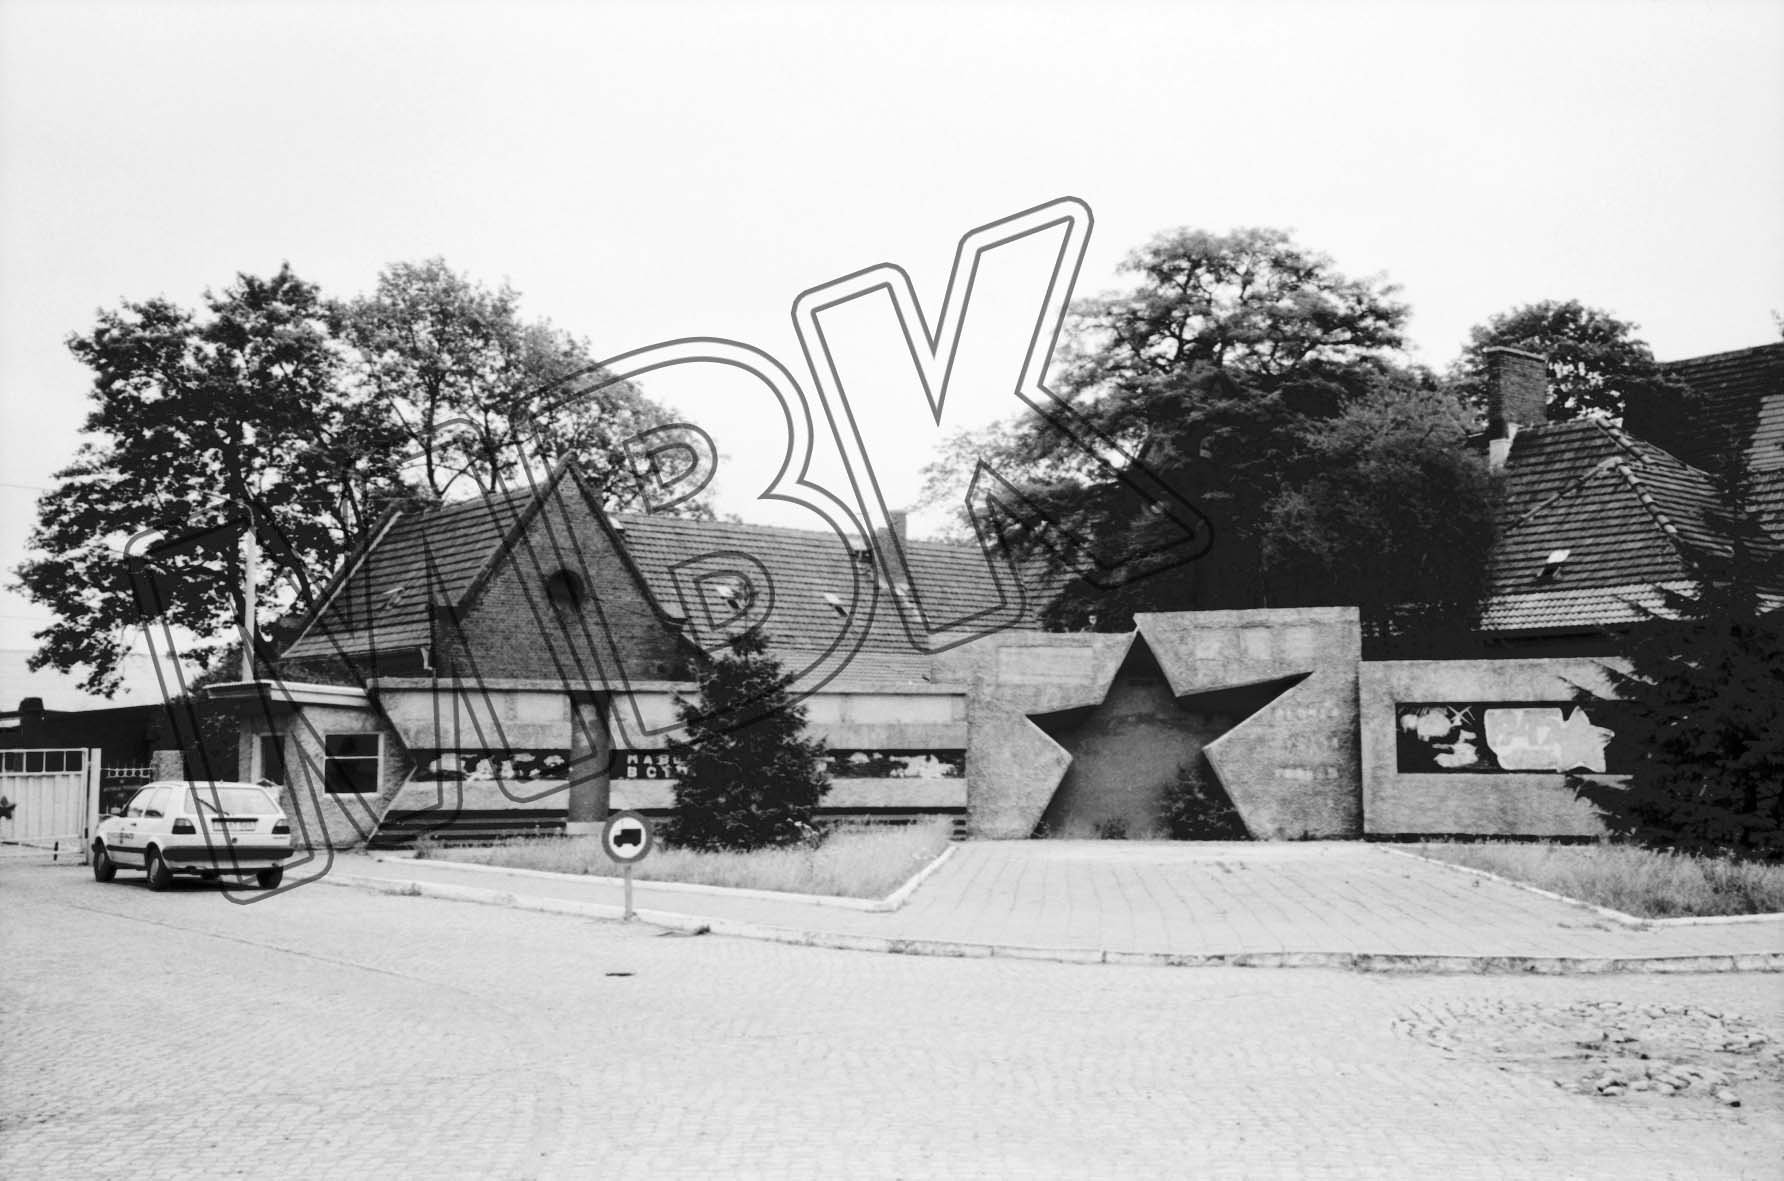 Fotografie: Kasernen-Denkmal nach der teilweisen Demontage, Jüterbog, 9. Juni 1992 (Museum Berlin-Karlshorst RR-P)